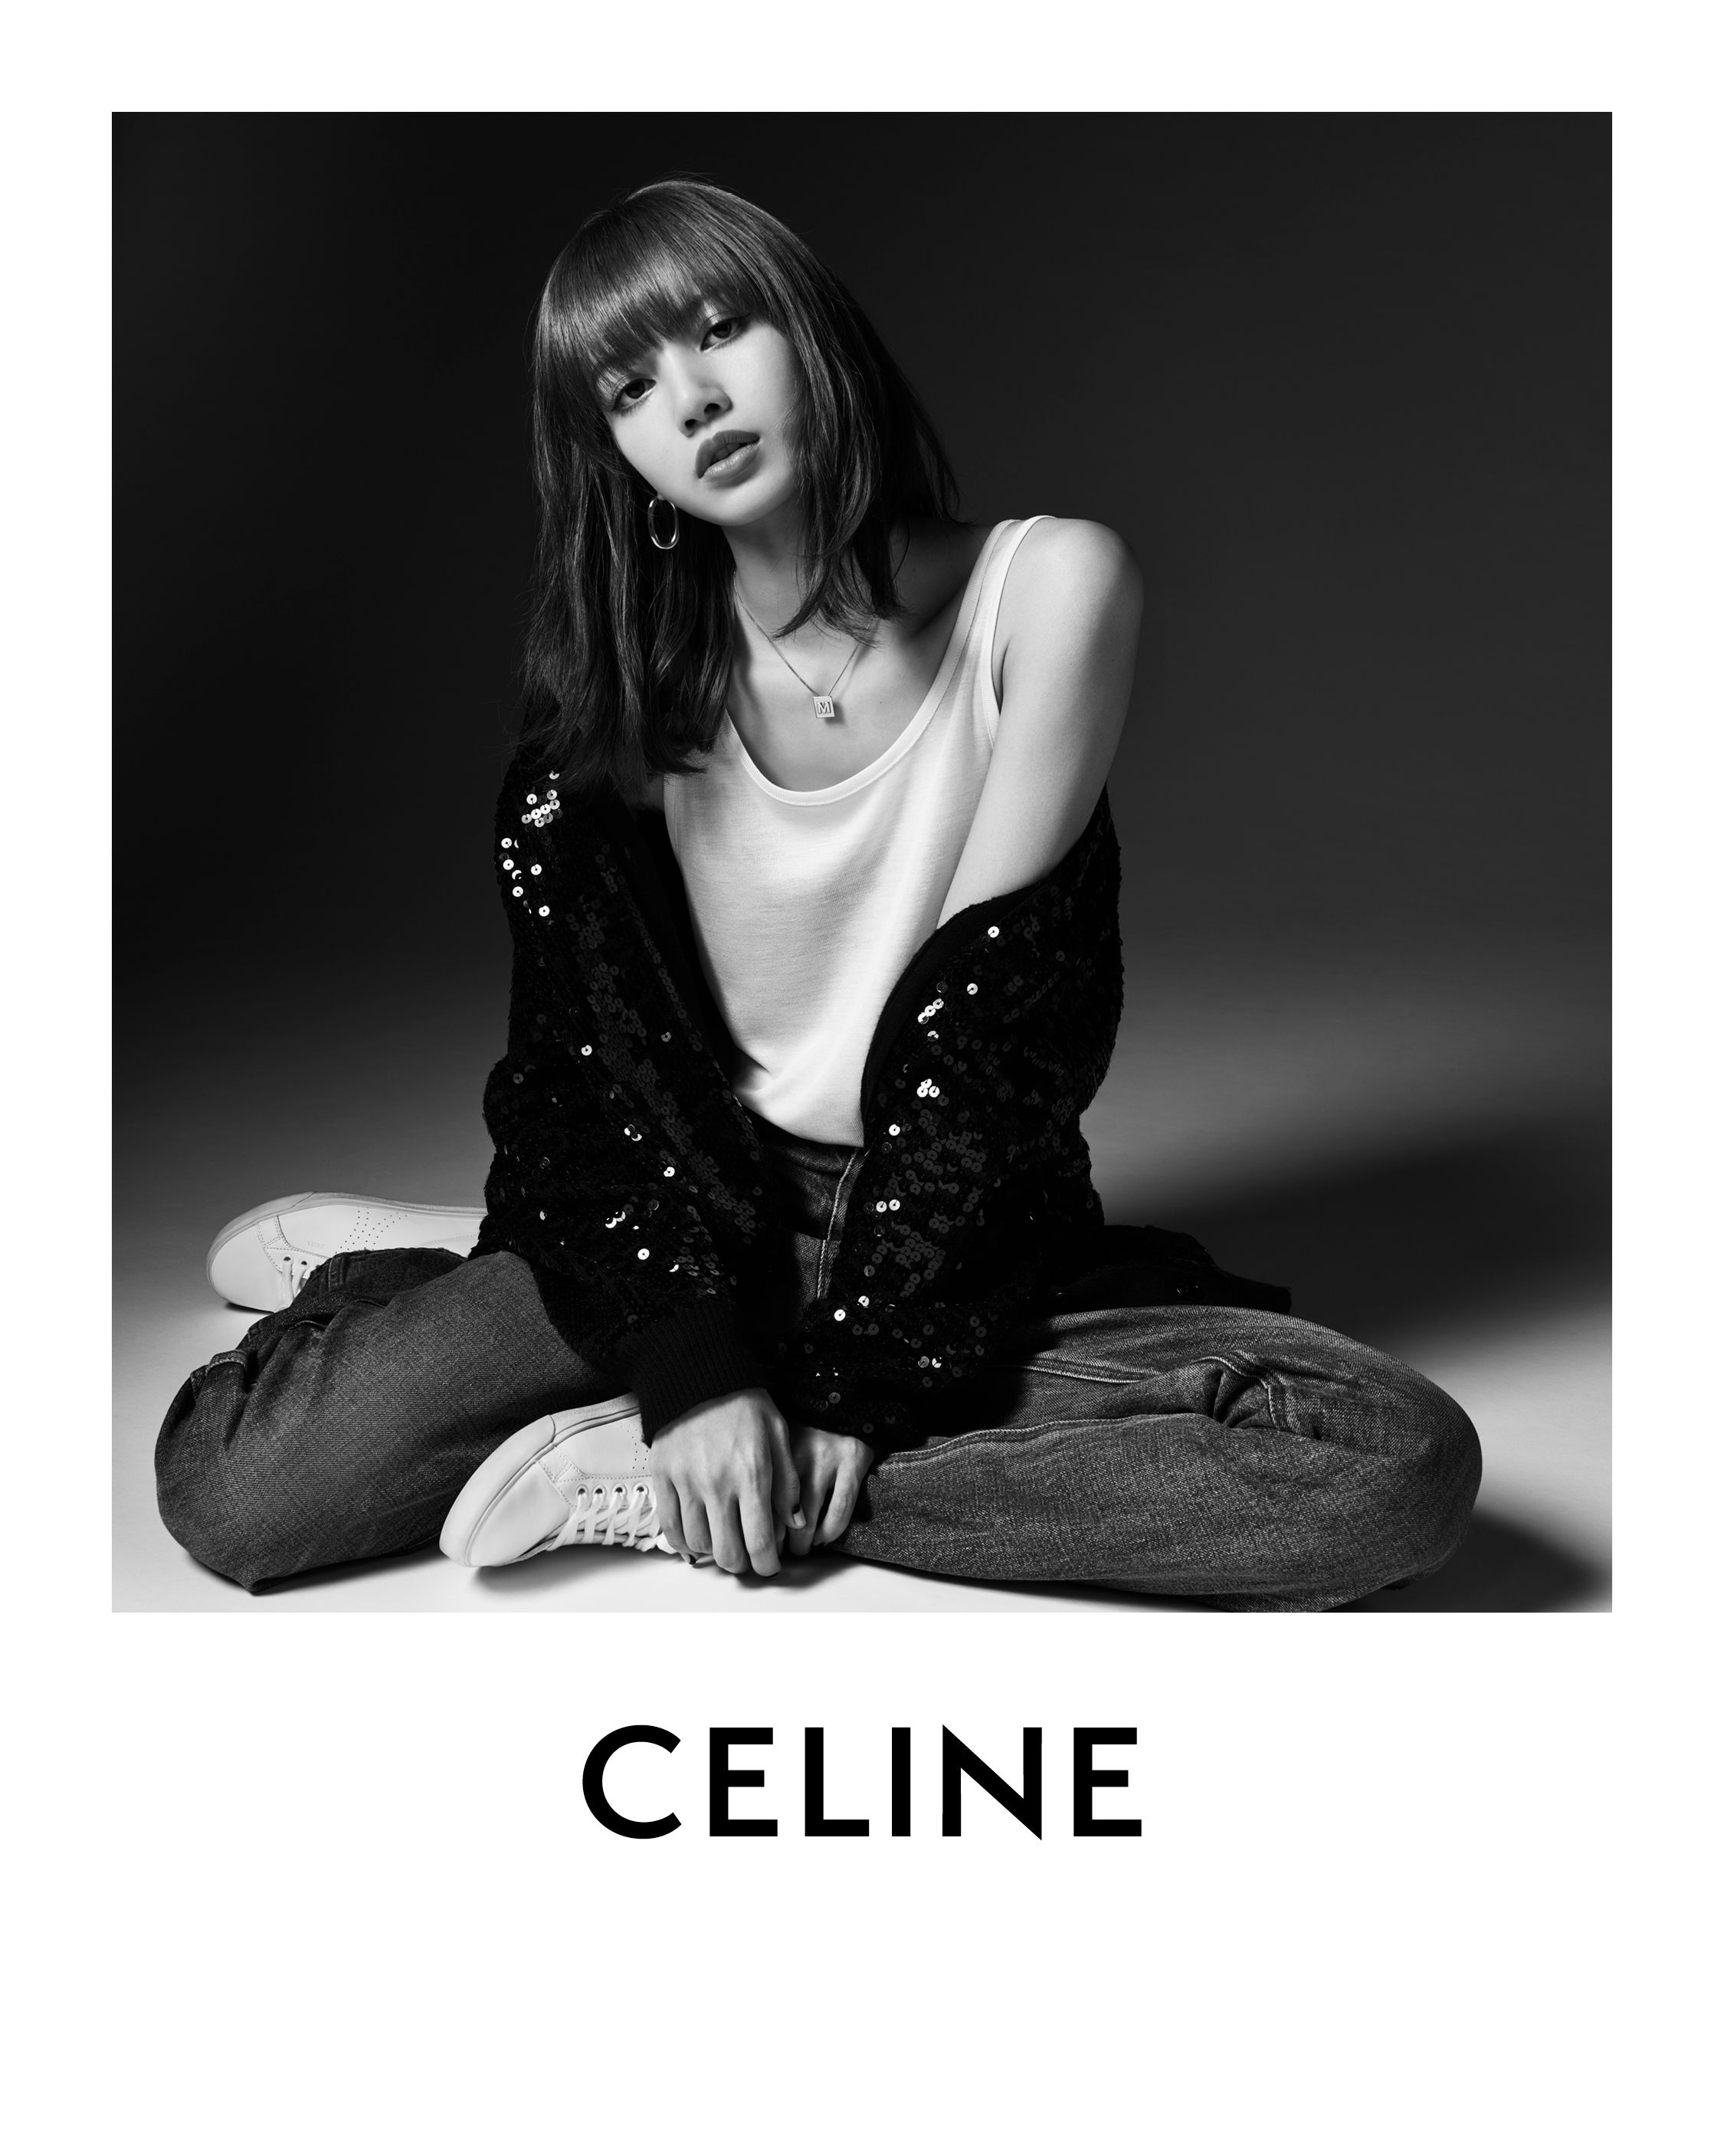 Blackpink's Lisa models Celine for ELLE China December cover - Global Times